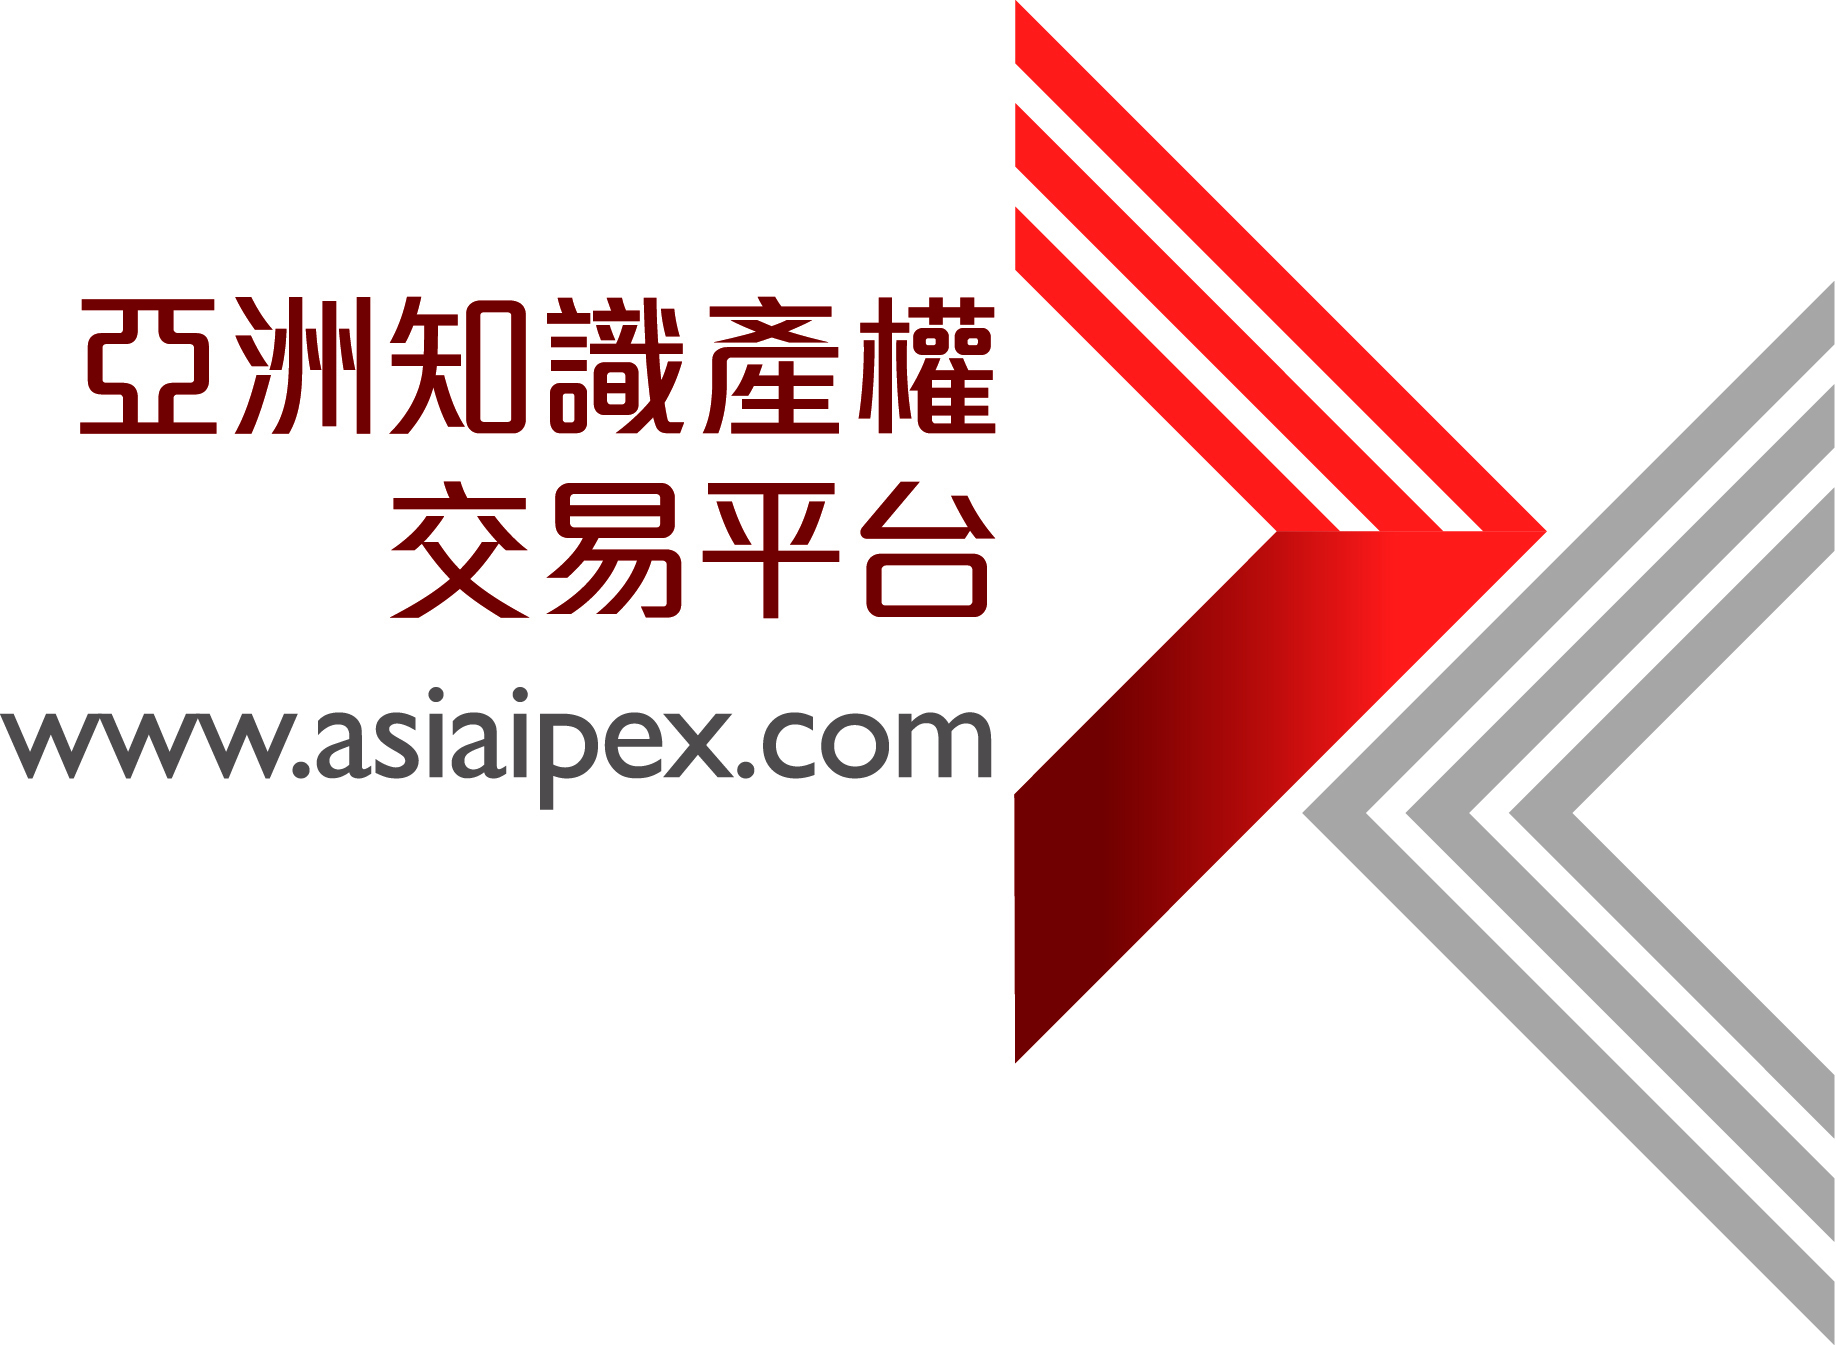 亞洲知識產權交易平台 (AsiaIPEX) - 推出免費知識產權實用指南